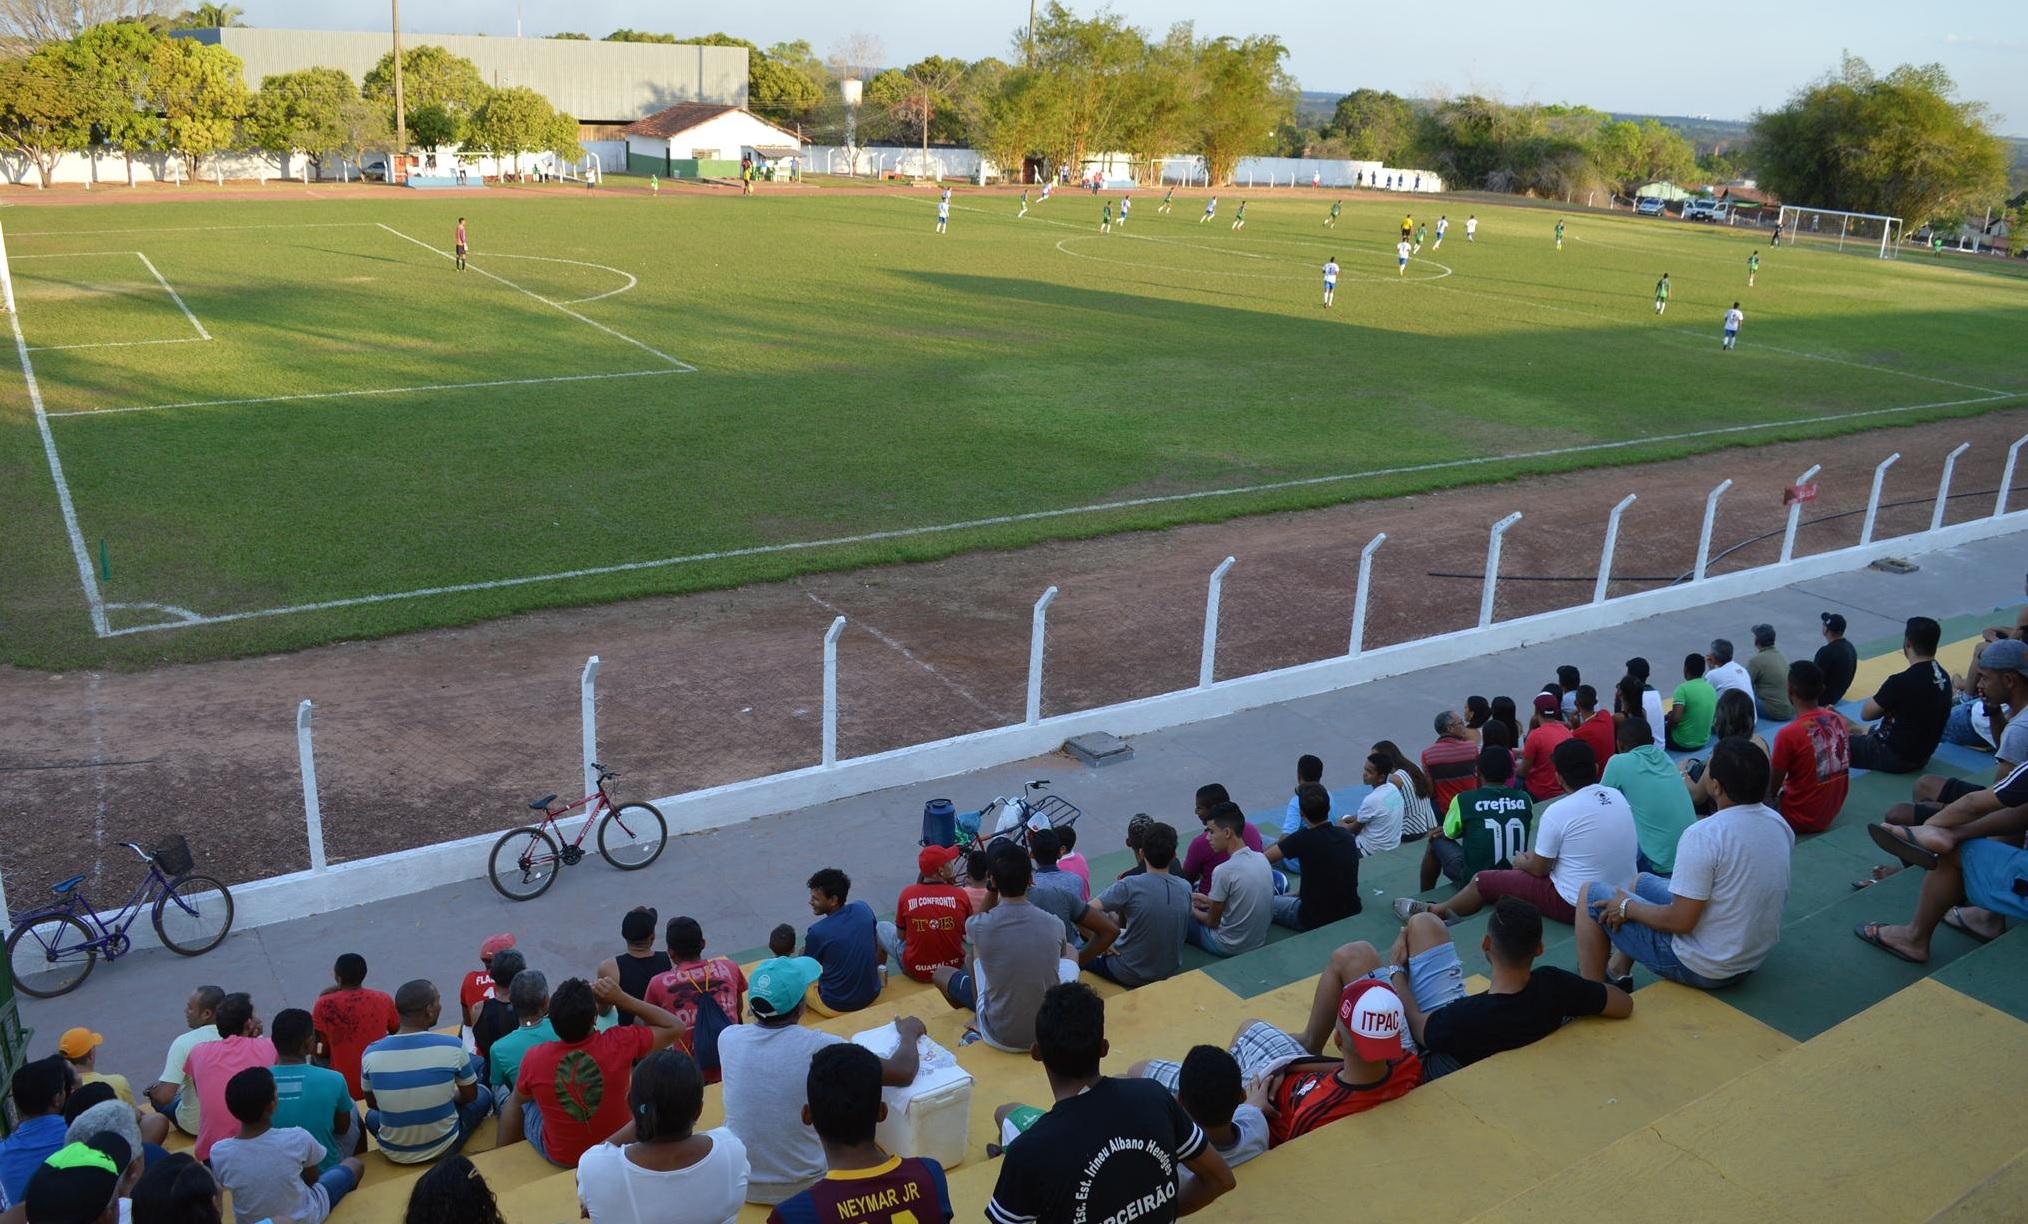 Publicado o edital para reforma e ampliação do Estádio Municipal Delfinão na cidade de Guaraí